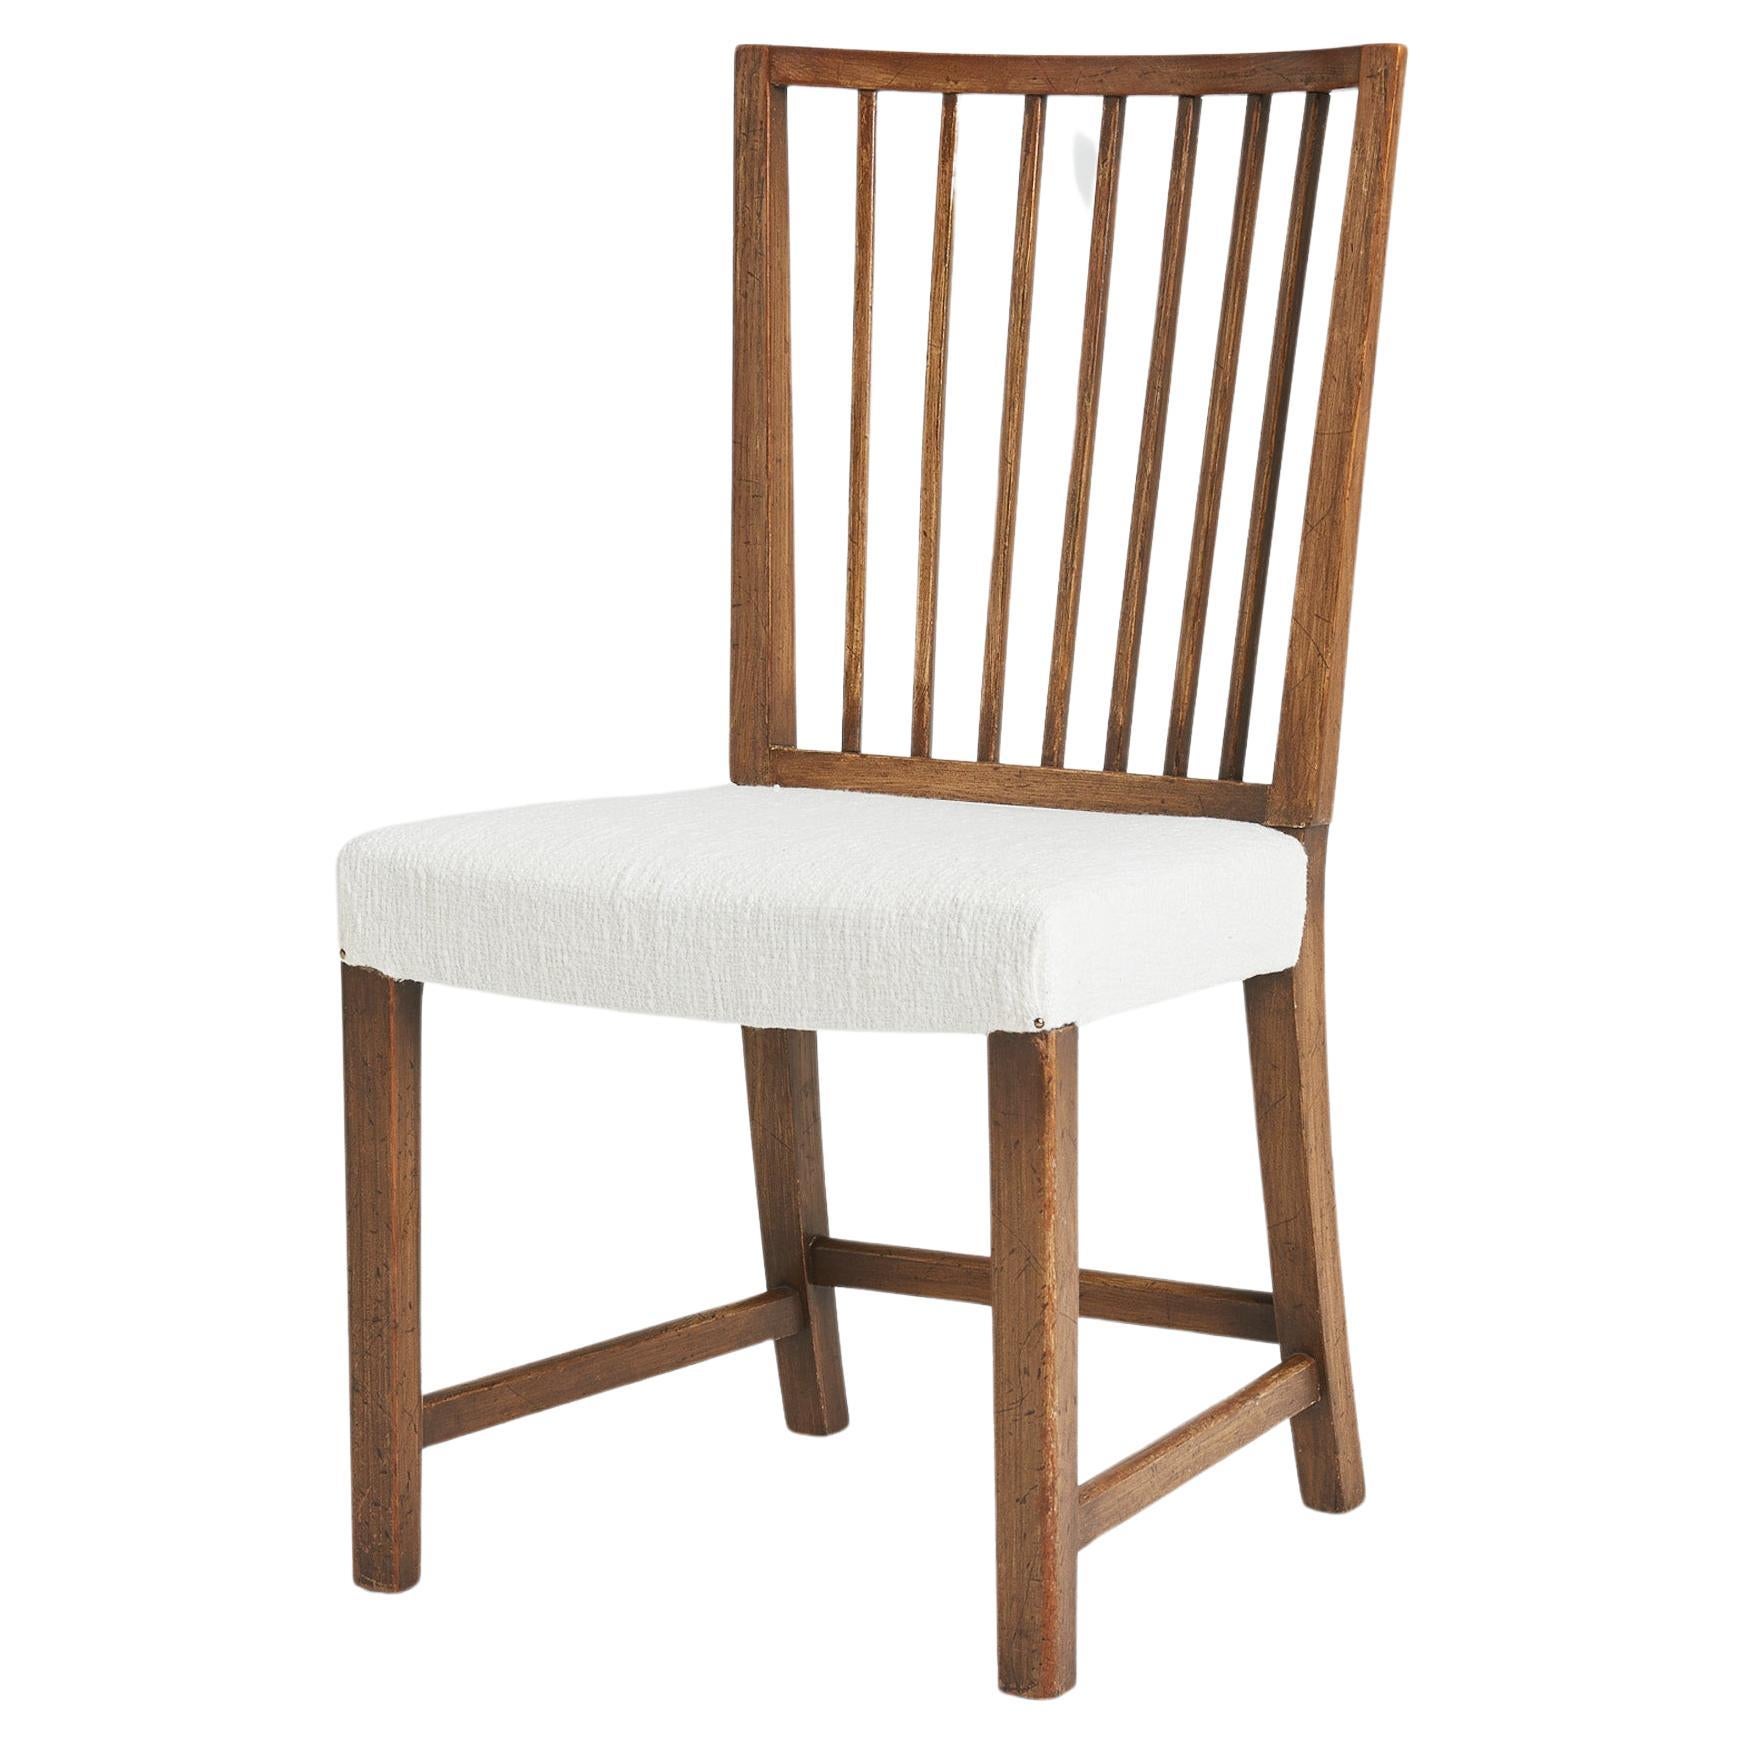 Chair by Axel Einar Hjorth (1888-1959)